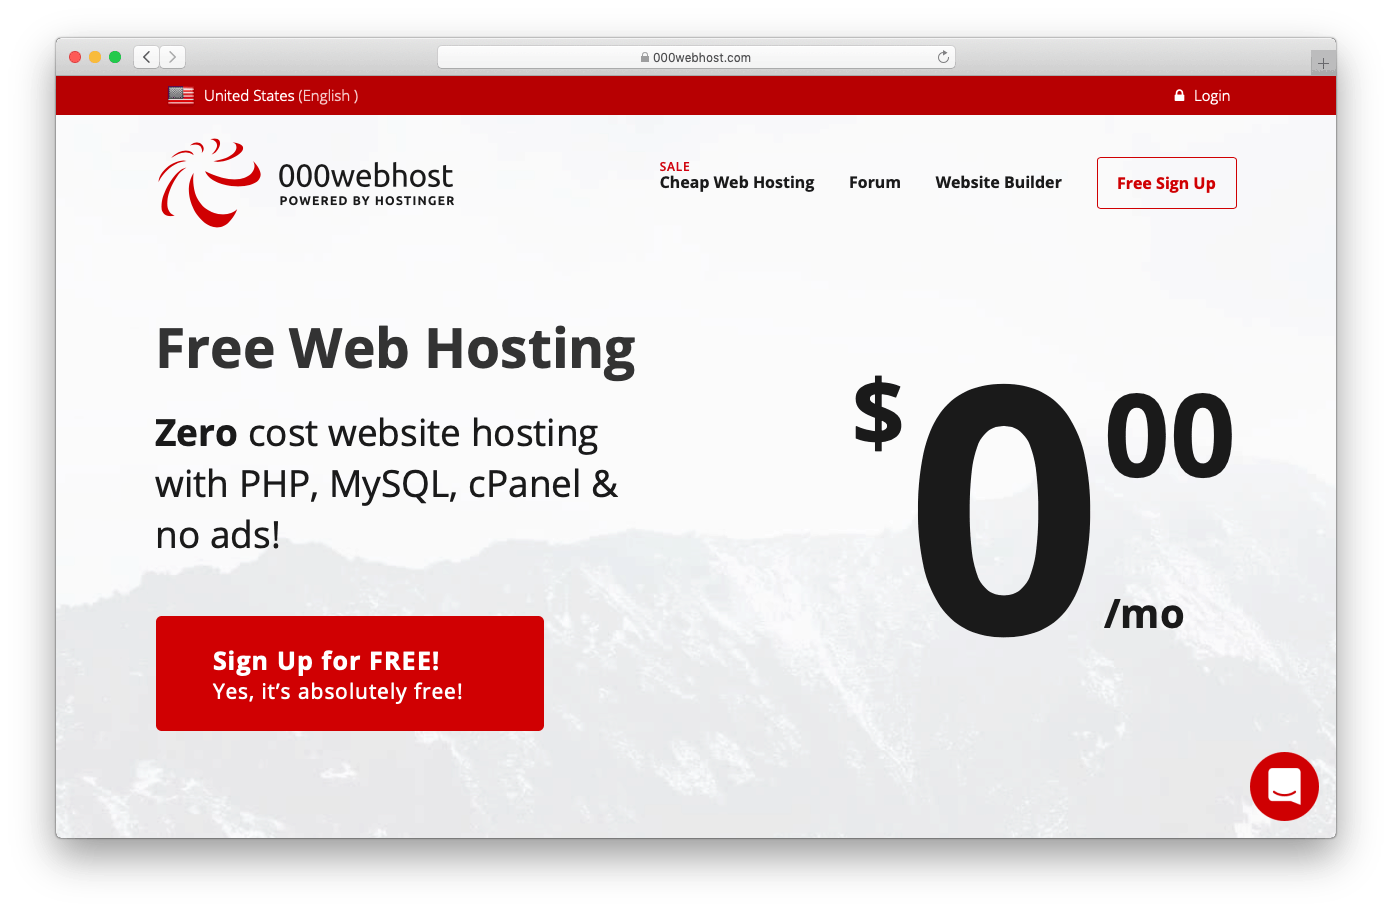 000webhost is The Best Free Webhosting